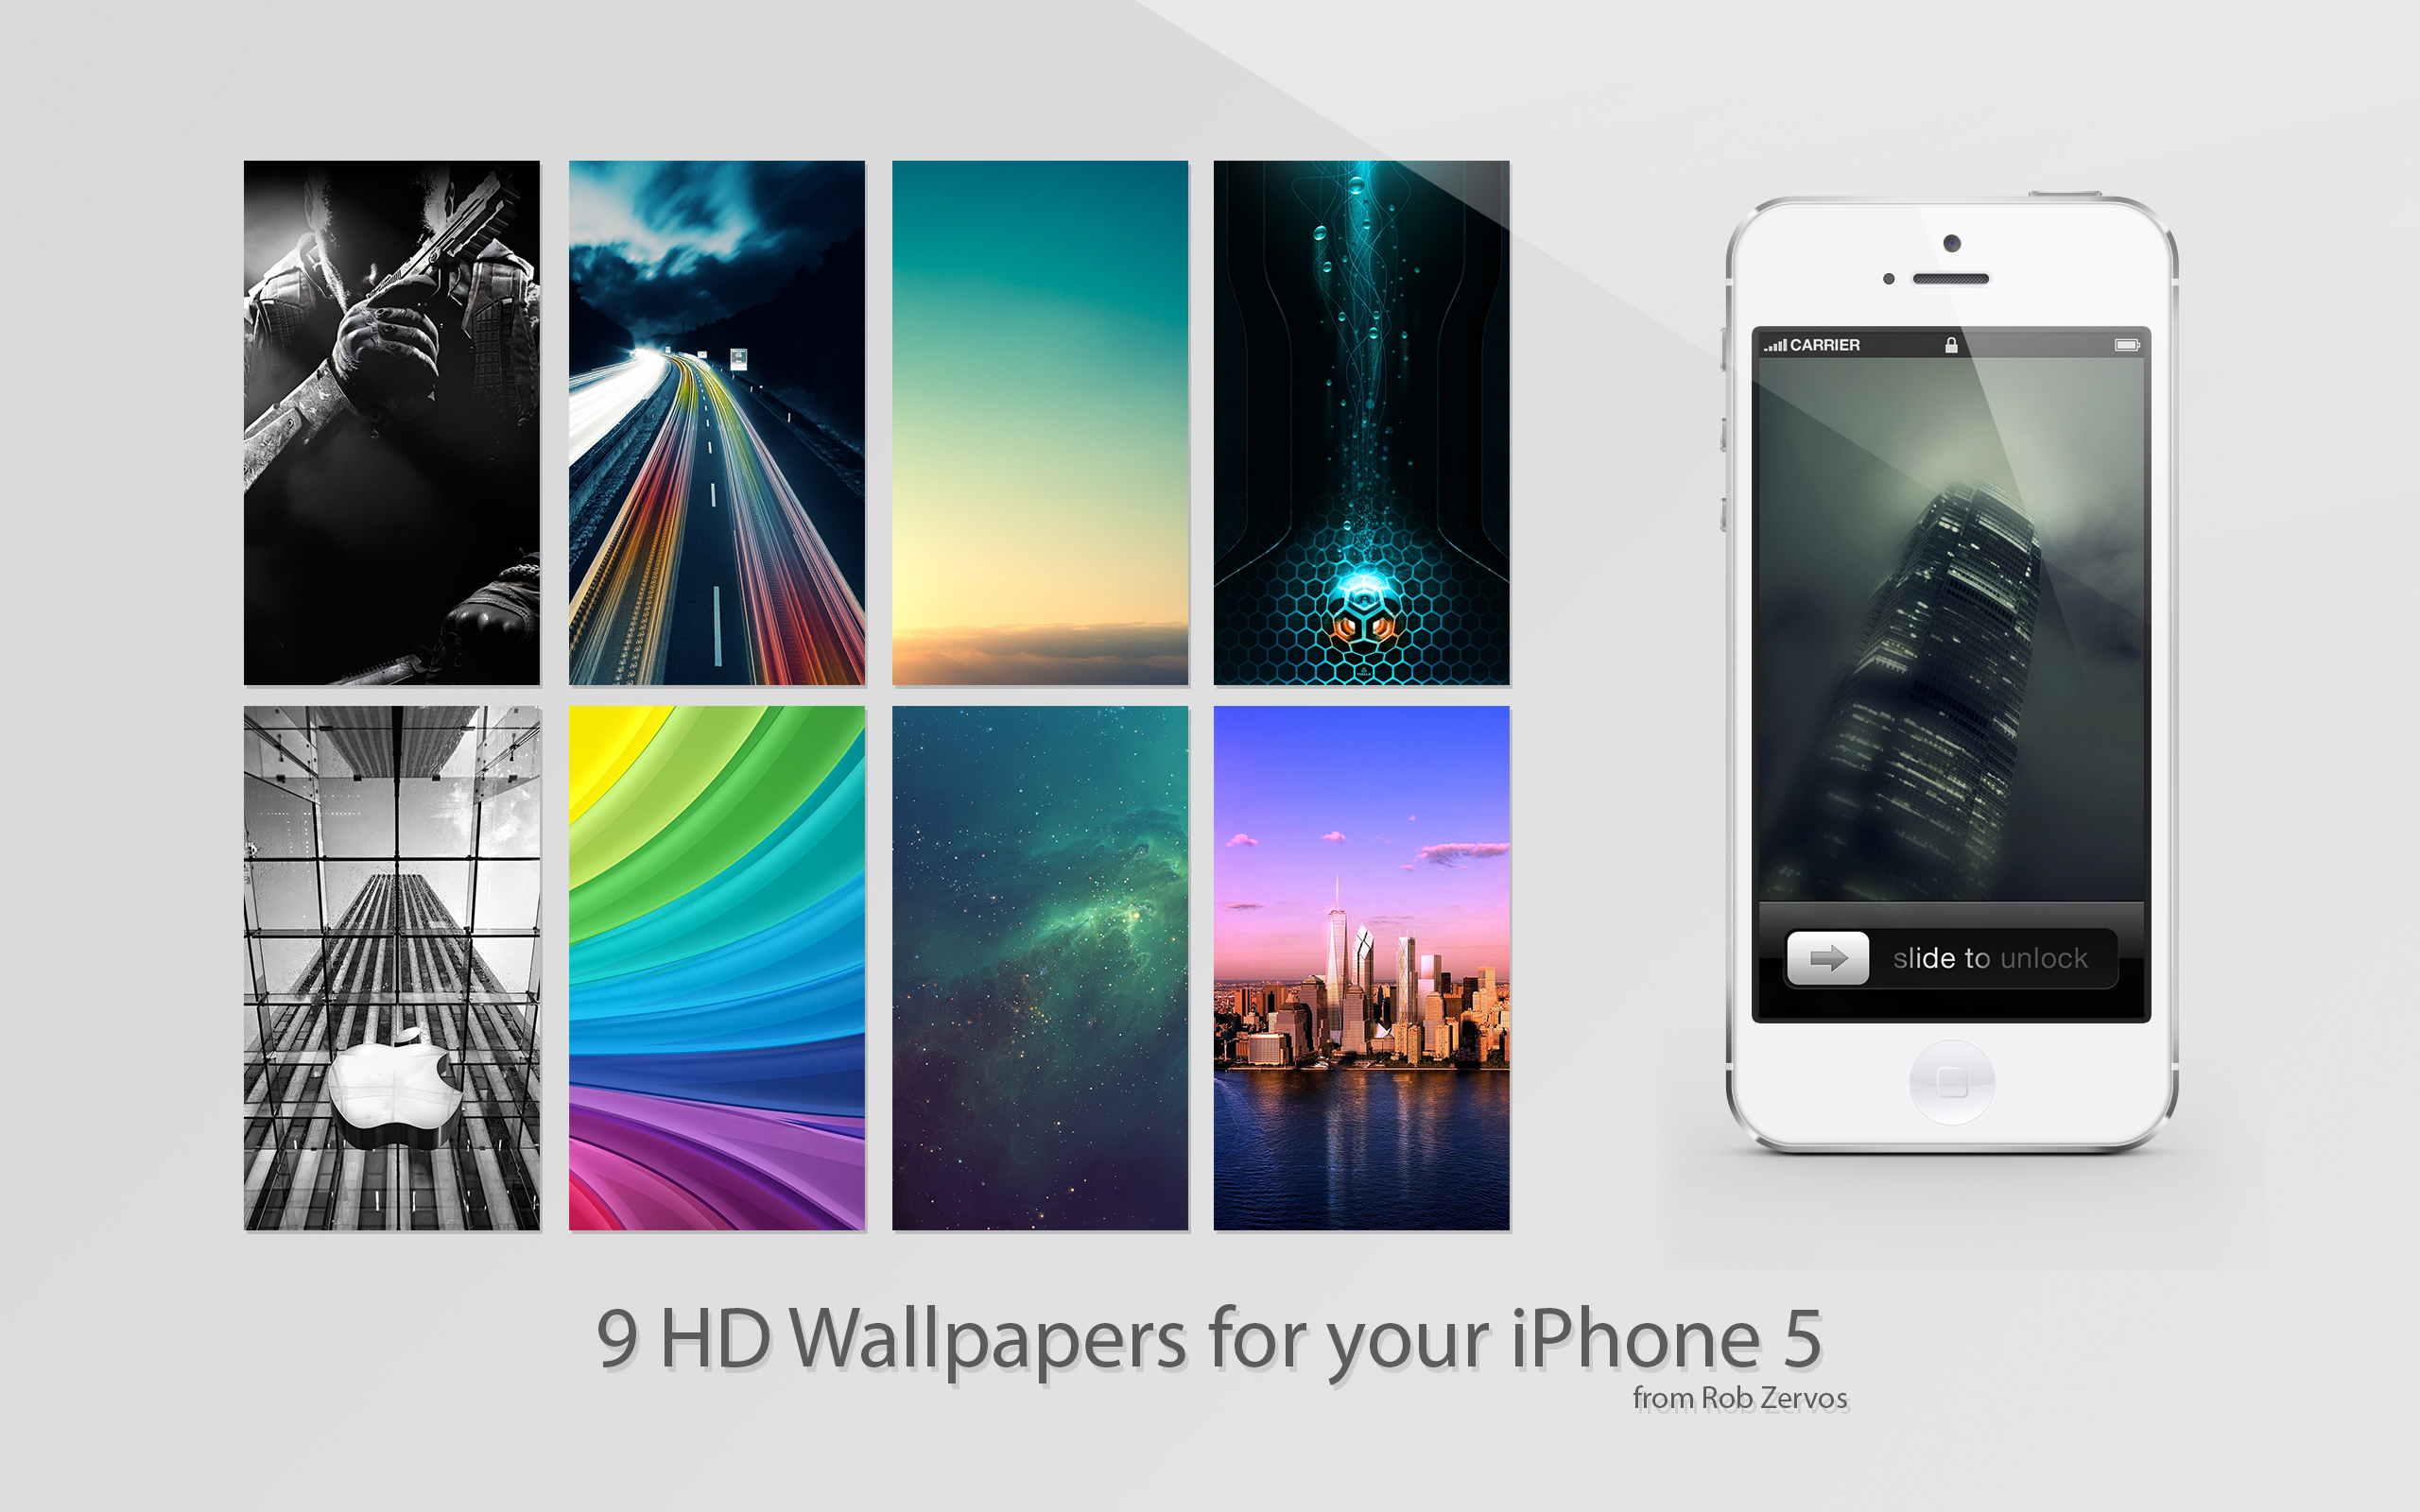 iPhone 5 HD Wallpaper pack 2 by SpeedX07 on DeviantArt